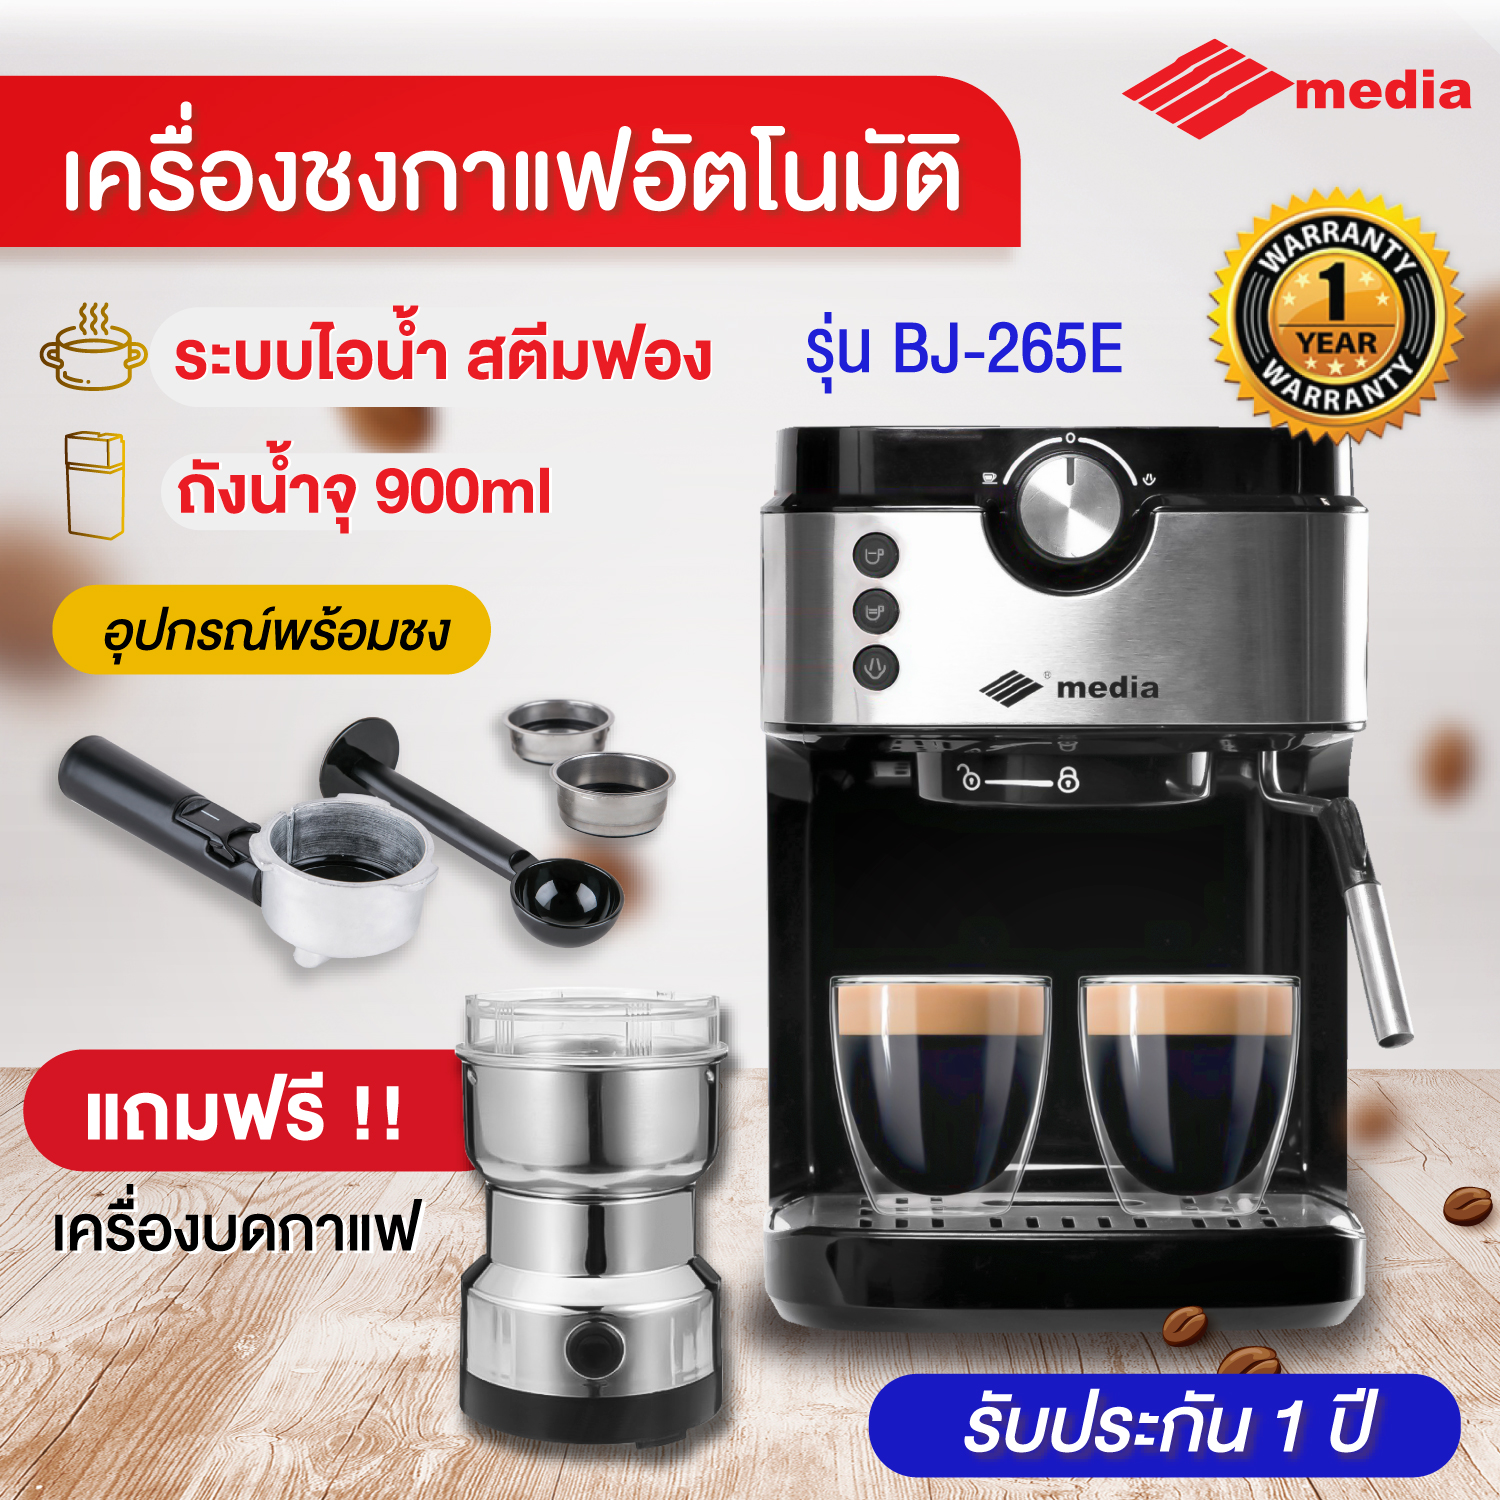 Media เครื่องชงกาแฟสด coffee maker espresso BJ265E พร้อมอุปกรณ์ แถมเครื่องบดกาแฟ ประกัน 1ปี Coffee maker เครื่องชงกาแฟอัตโนมัติ ระบบไอน้ำ ตีฟองนม สีดำ